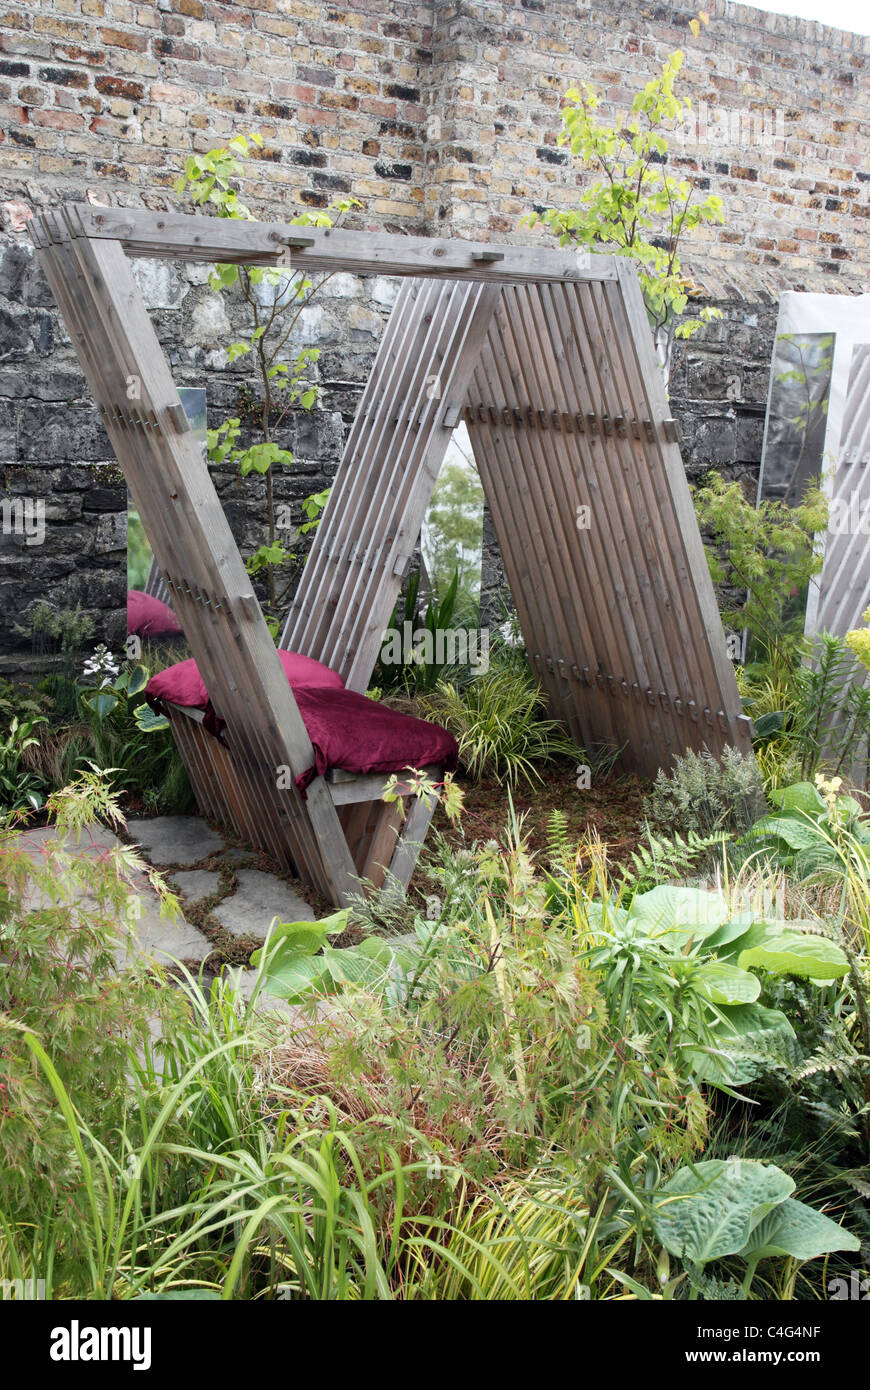 innovative garden seating, Bloom show garden 2011 Stock Photo